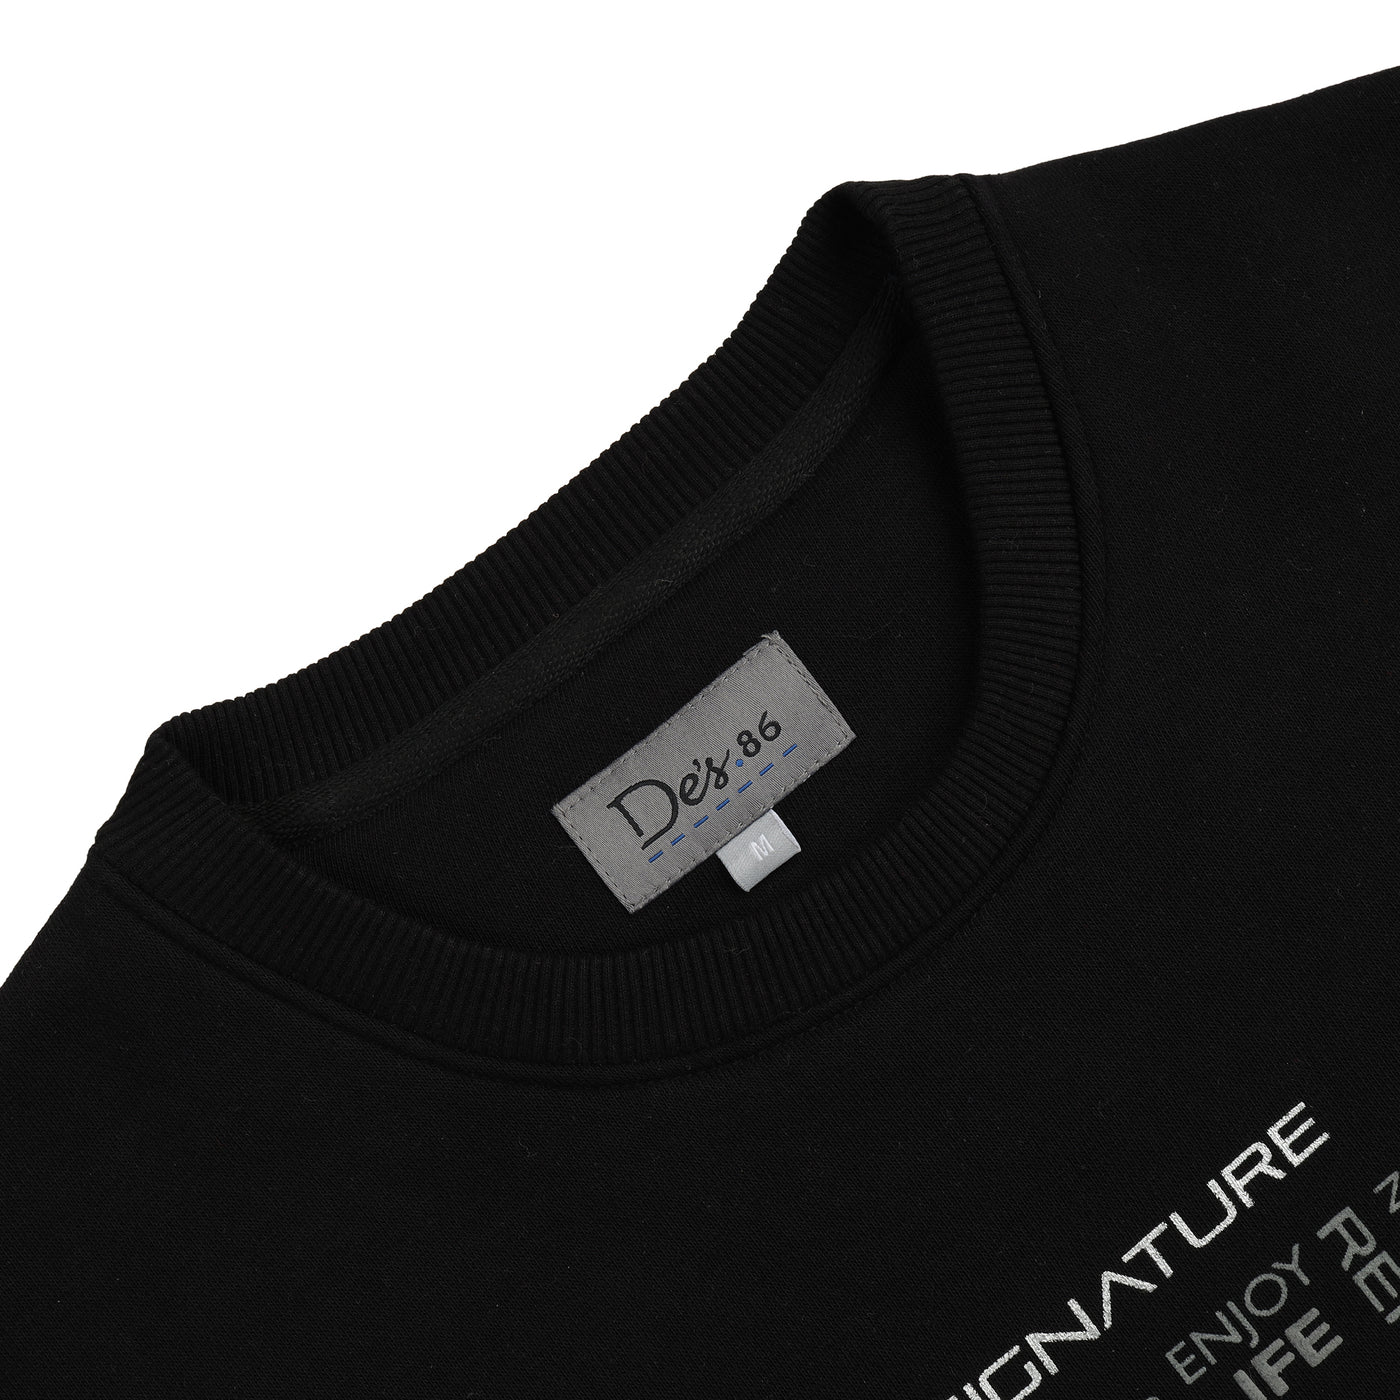 Printed Black Sweatshirt